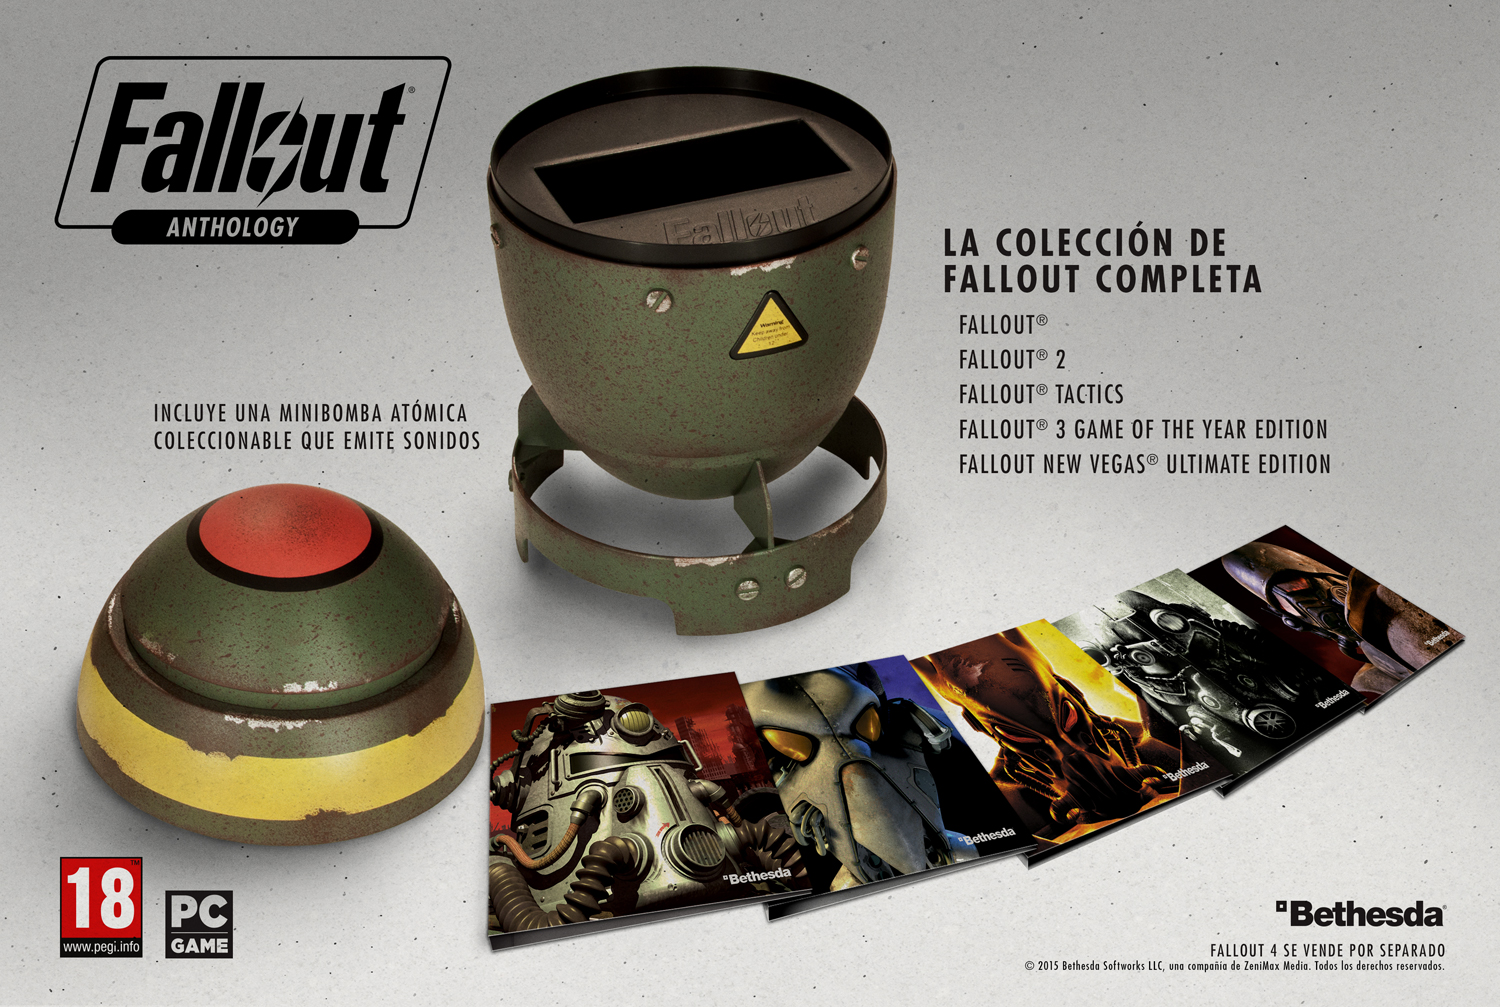 Eso es: la Fallout Anthology se vende dentro de una bomba nuclear en miniatura y con un aire retro fantástico. No, no tiene plutonio.